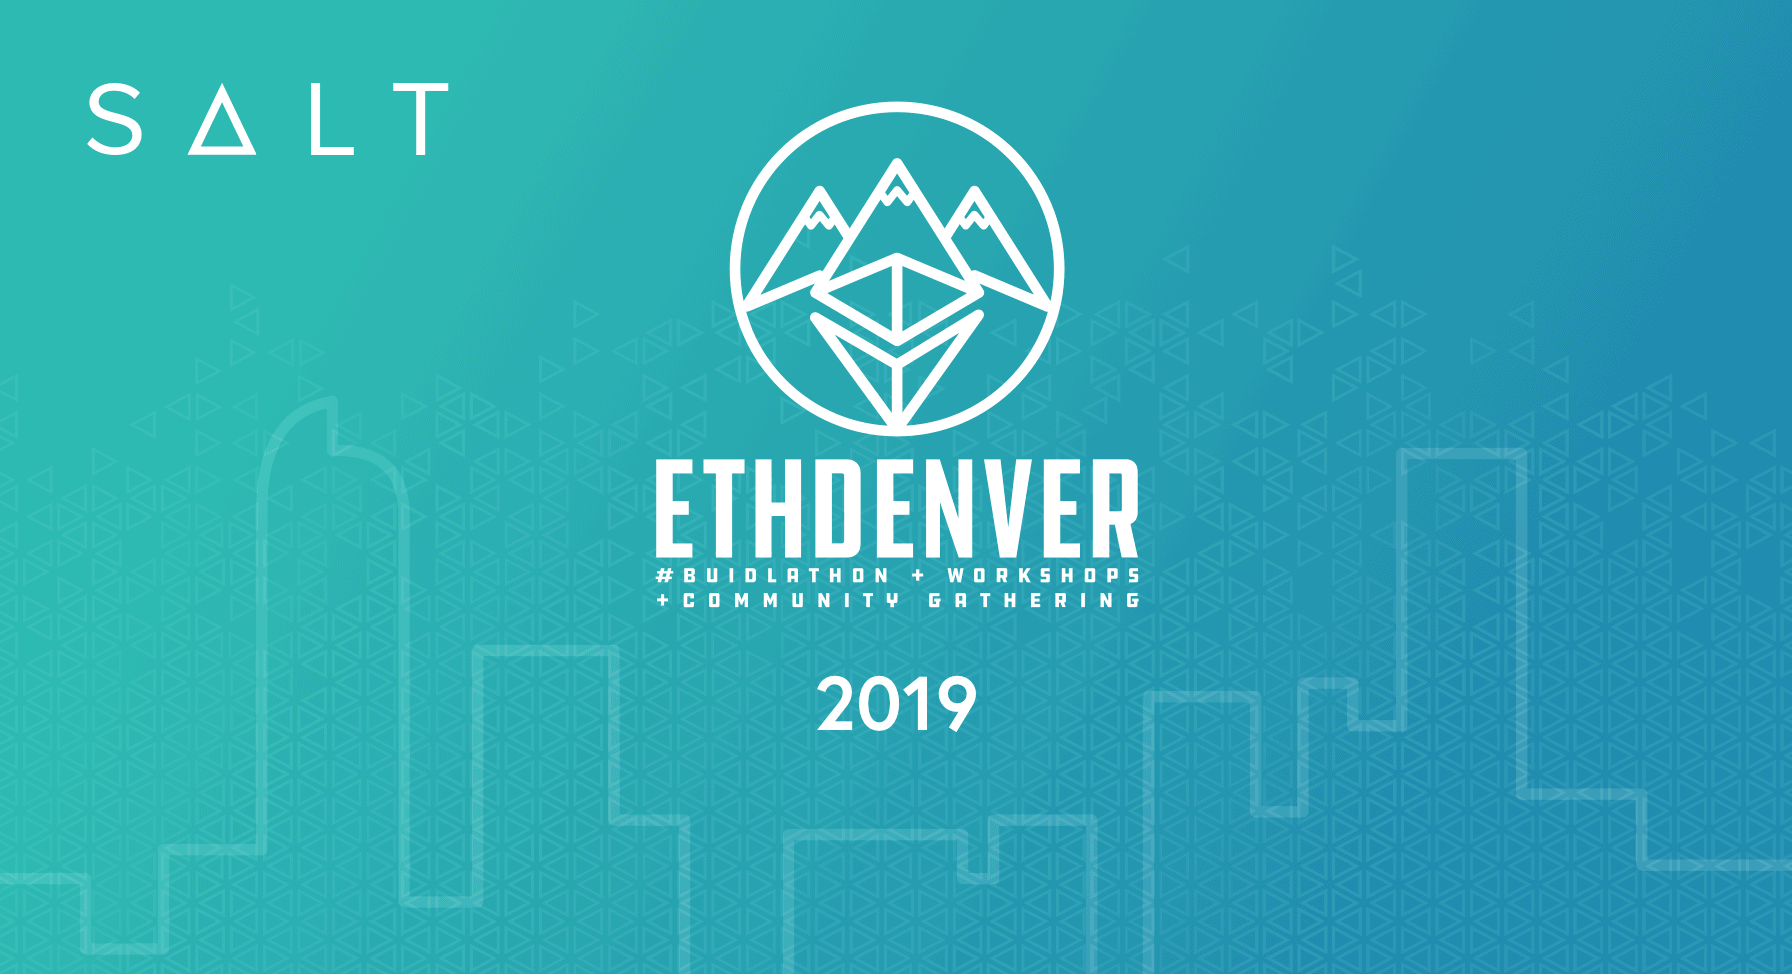 2019 ETH Denver logo from SALT sponsorship